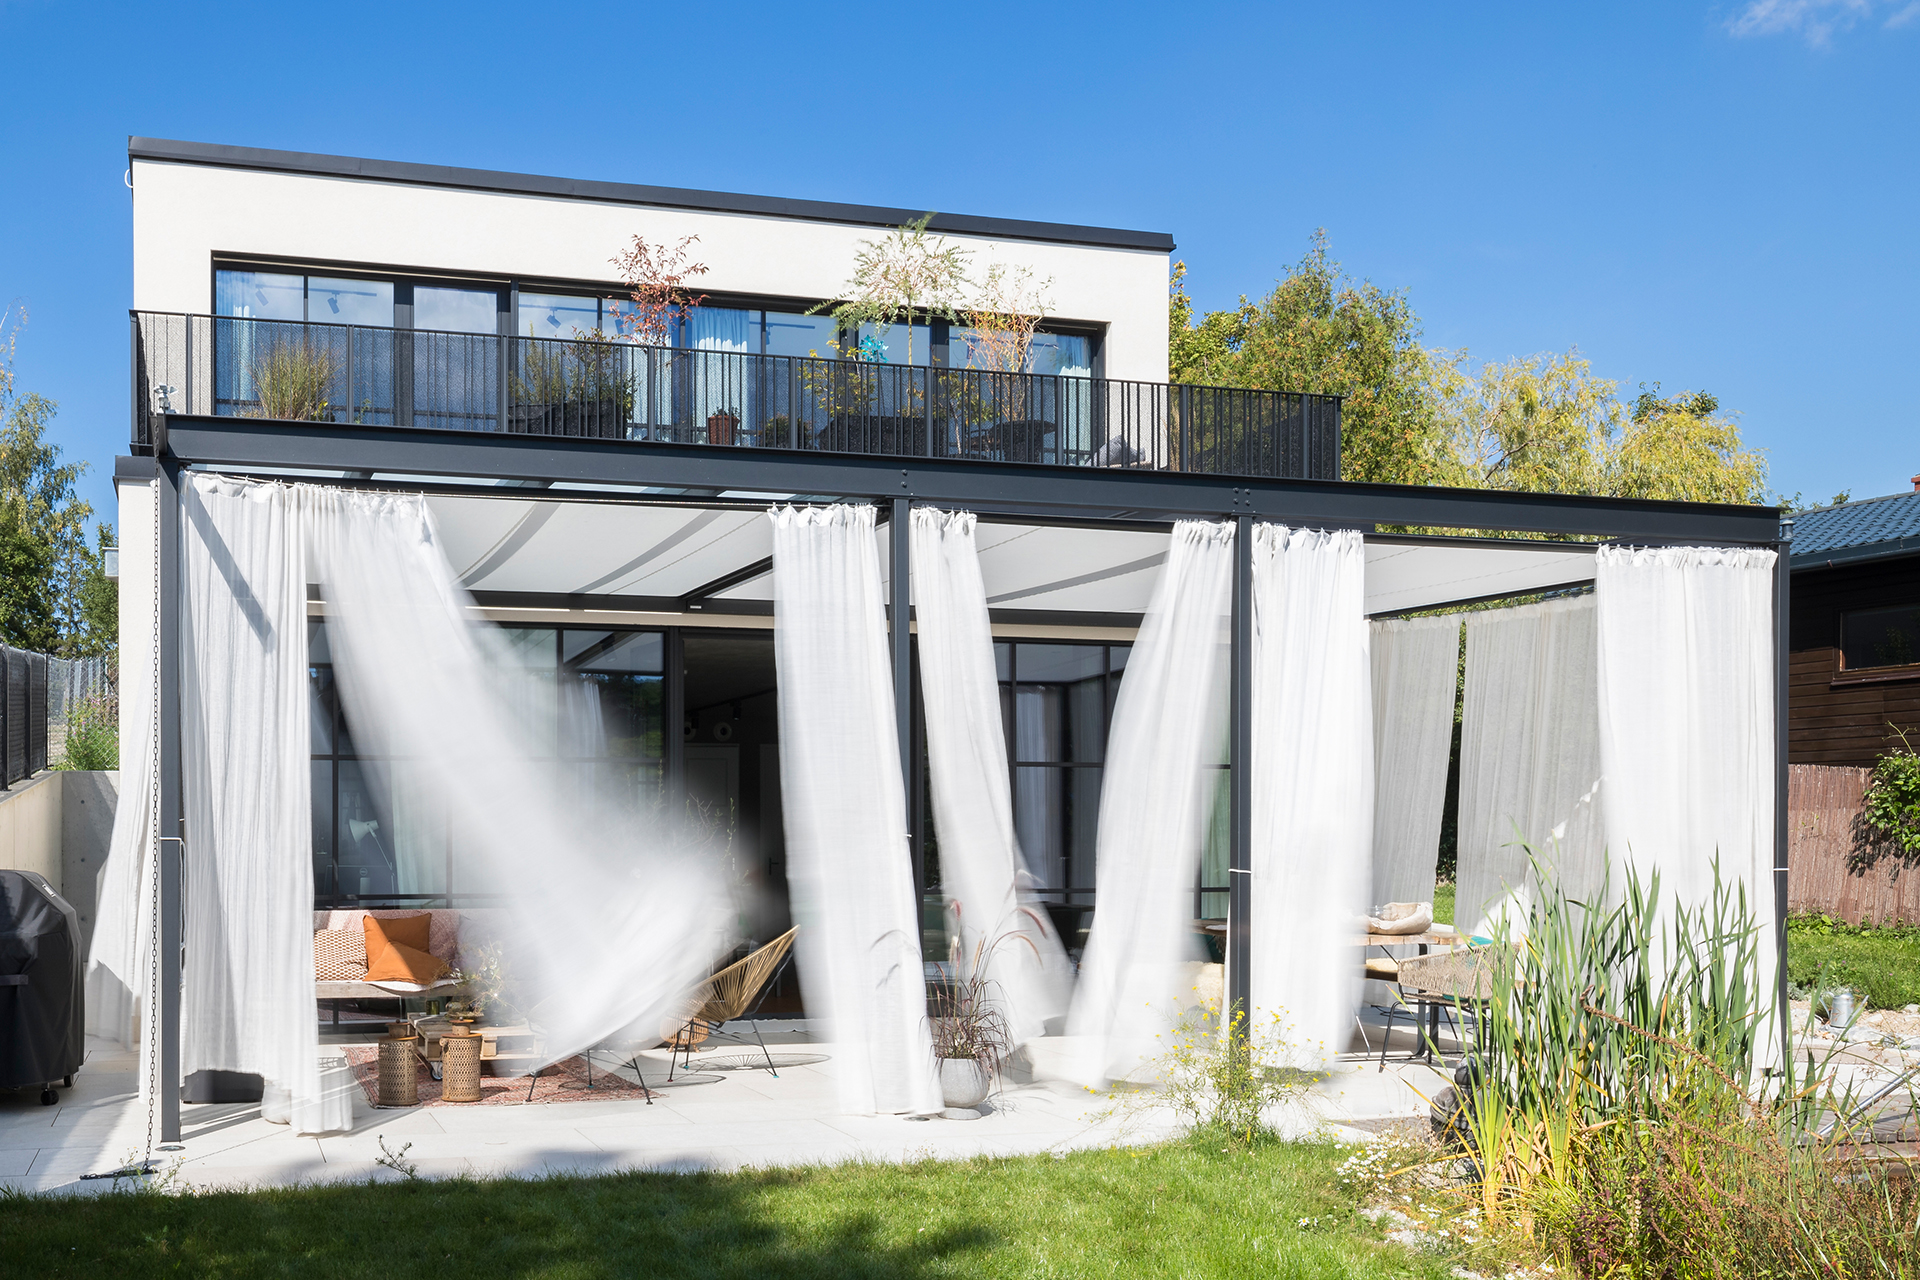 Industrial House im Süden von Wien, Passivhaus mit Stahl Glasfronten, Interior Design in Zeiten des Klimawandels